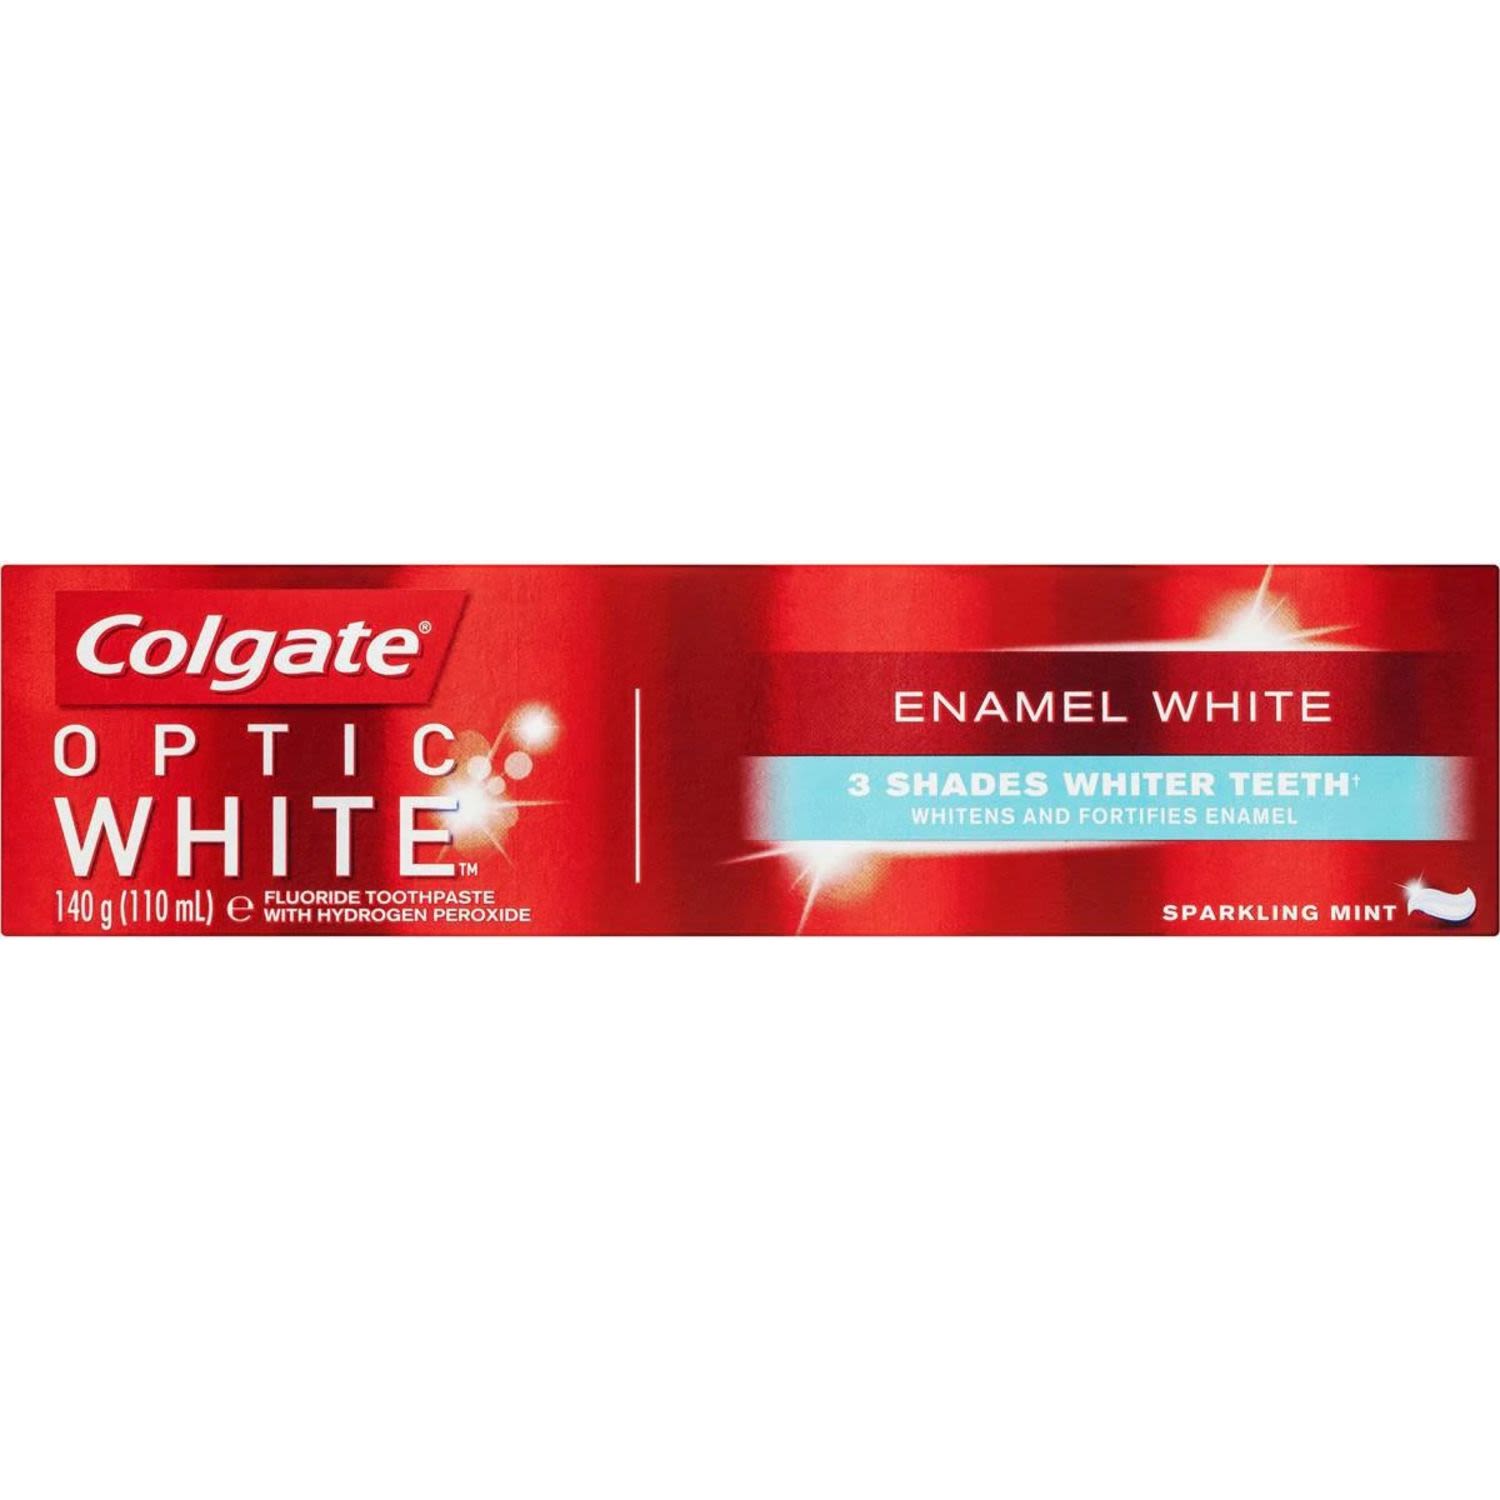 Colgate Optic White Enamel White Teeth Whitening Toothpaste, 140 Gram